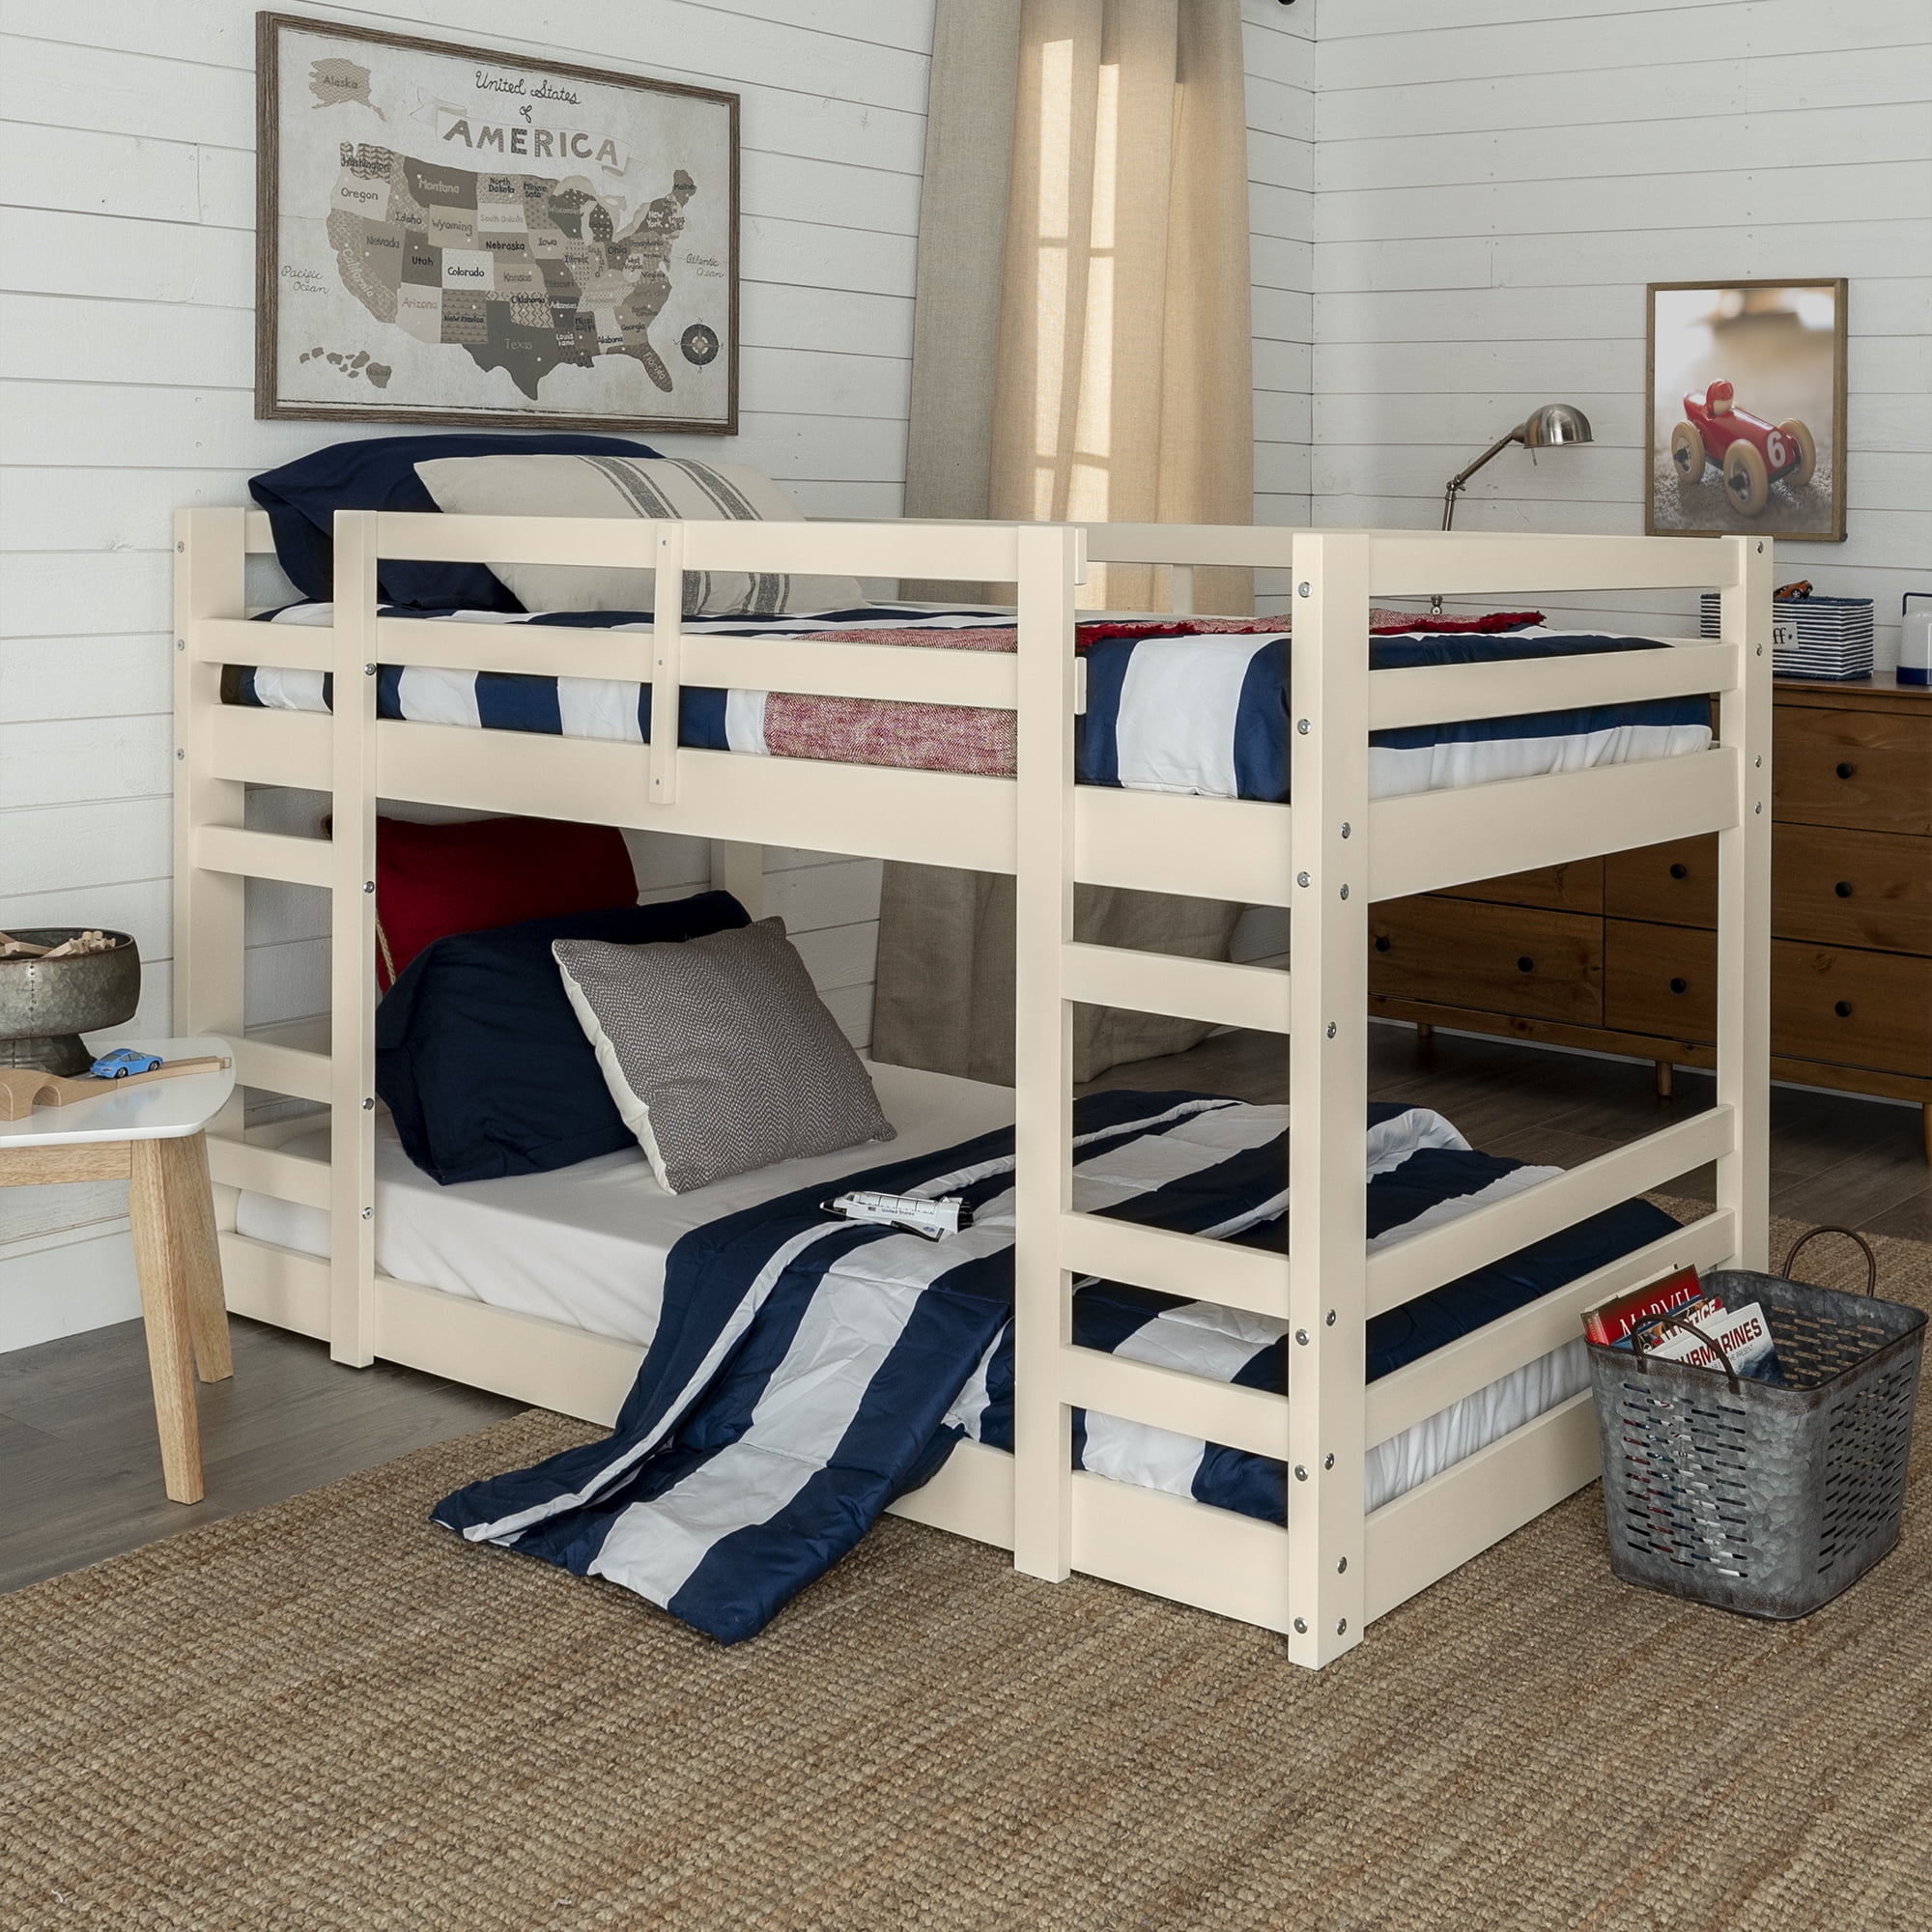 floor bunk beds for sale